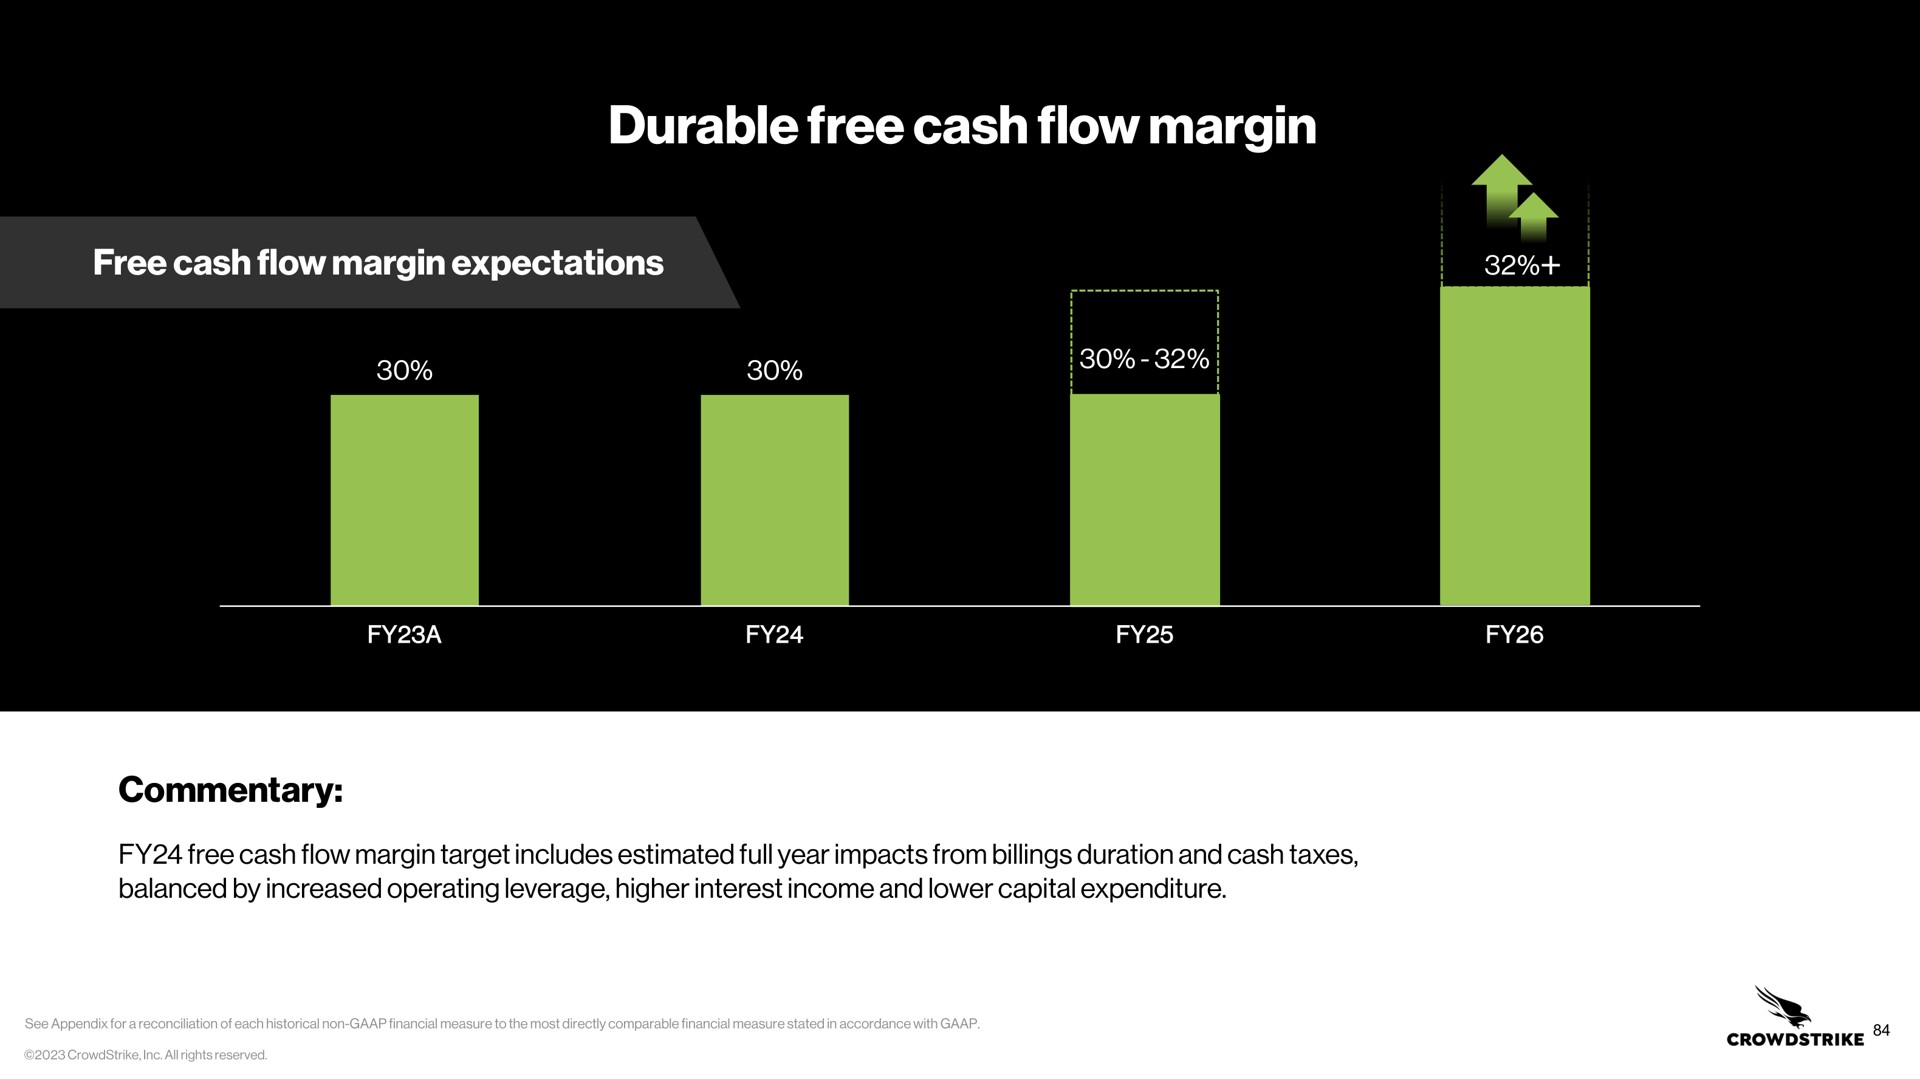 durable free cash flow margin | Crowdstrike